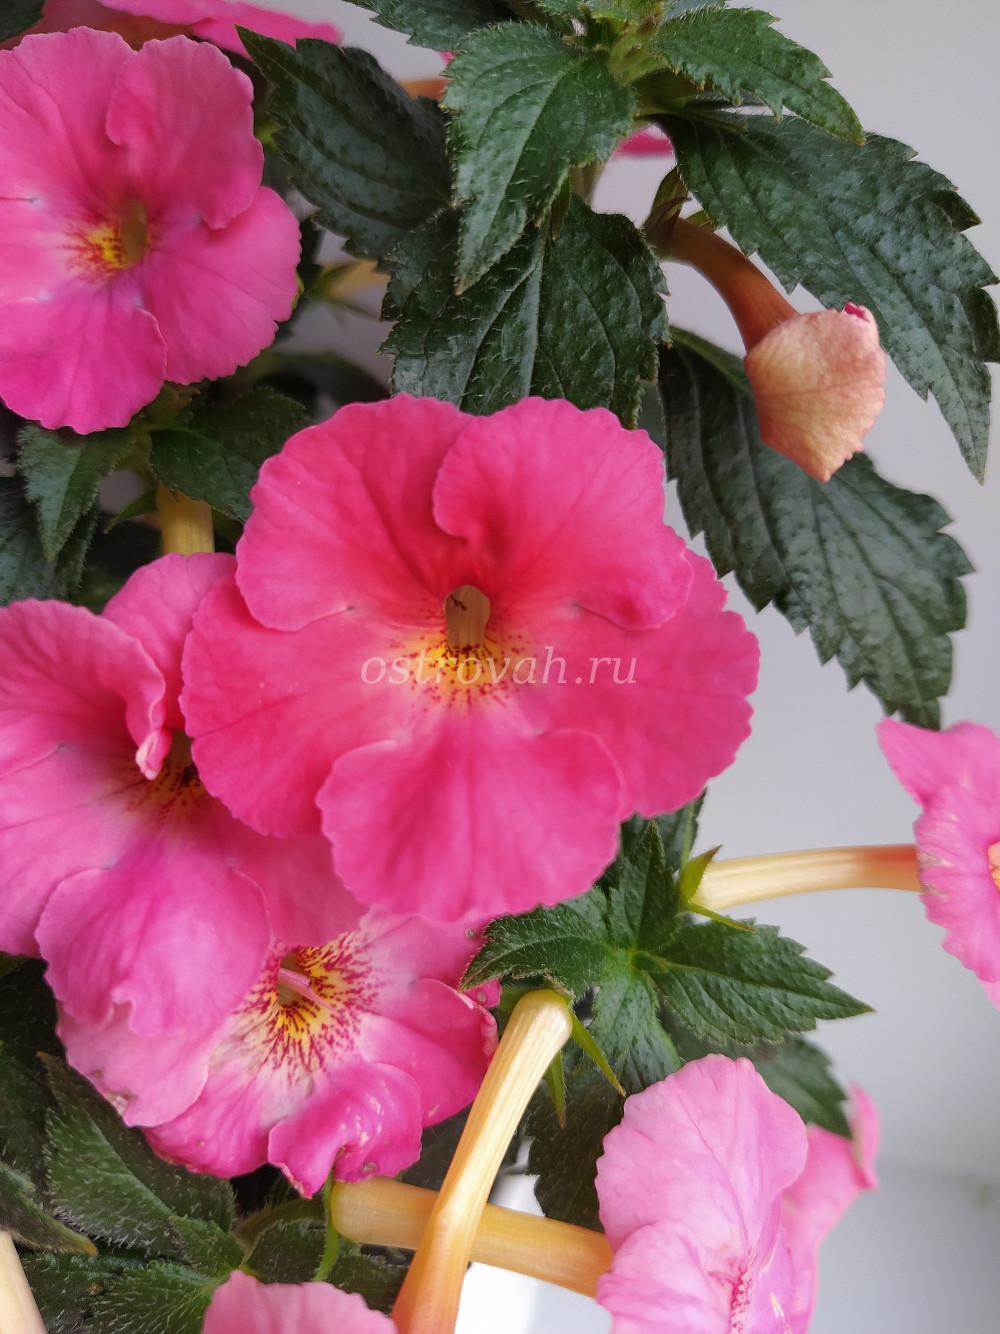 Розово-персиковый пересорт